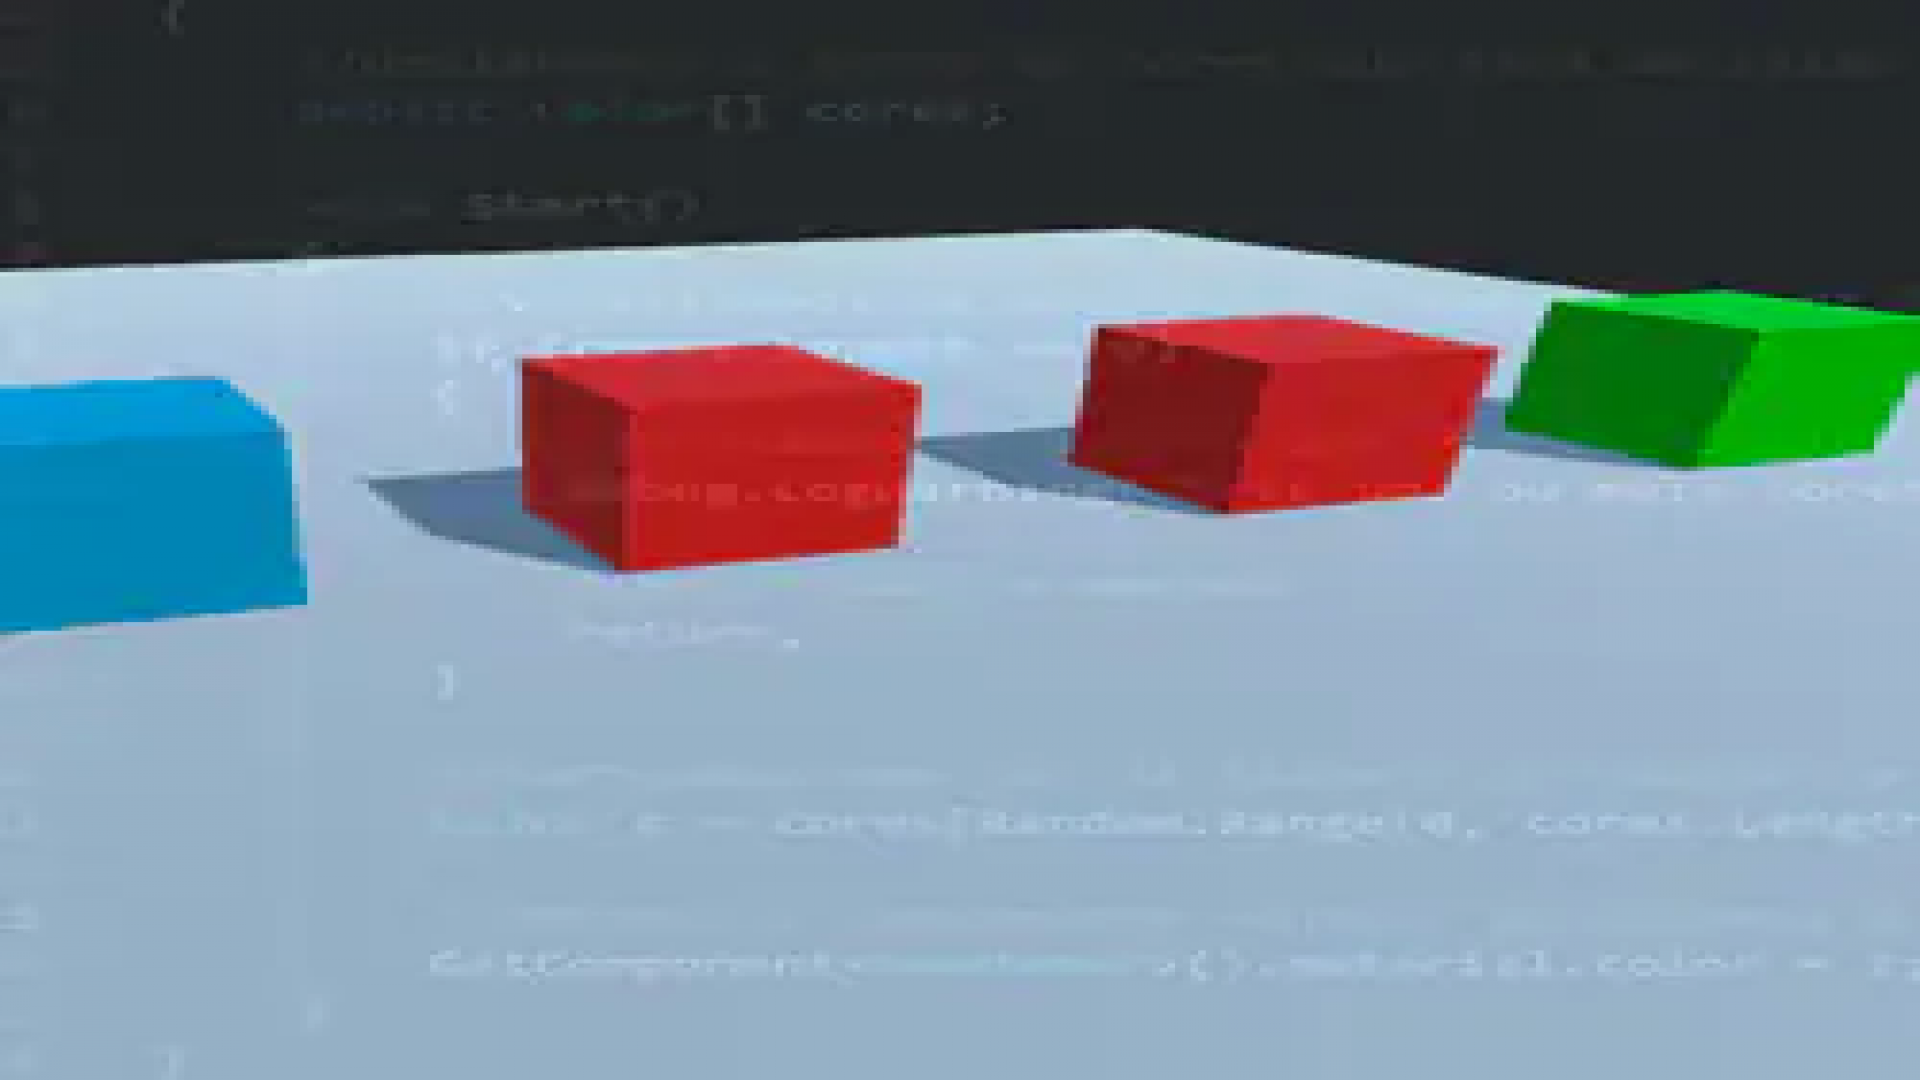 Alterando a cor de um material via script na Unity 3D